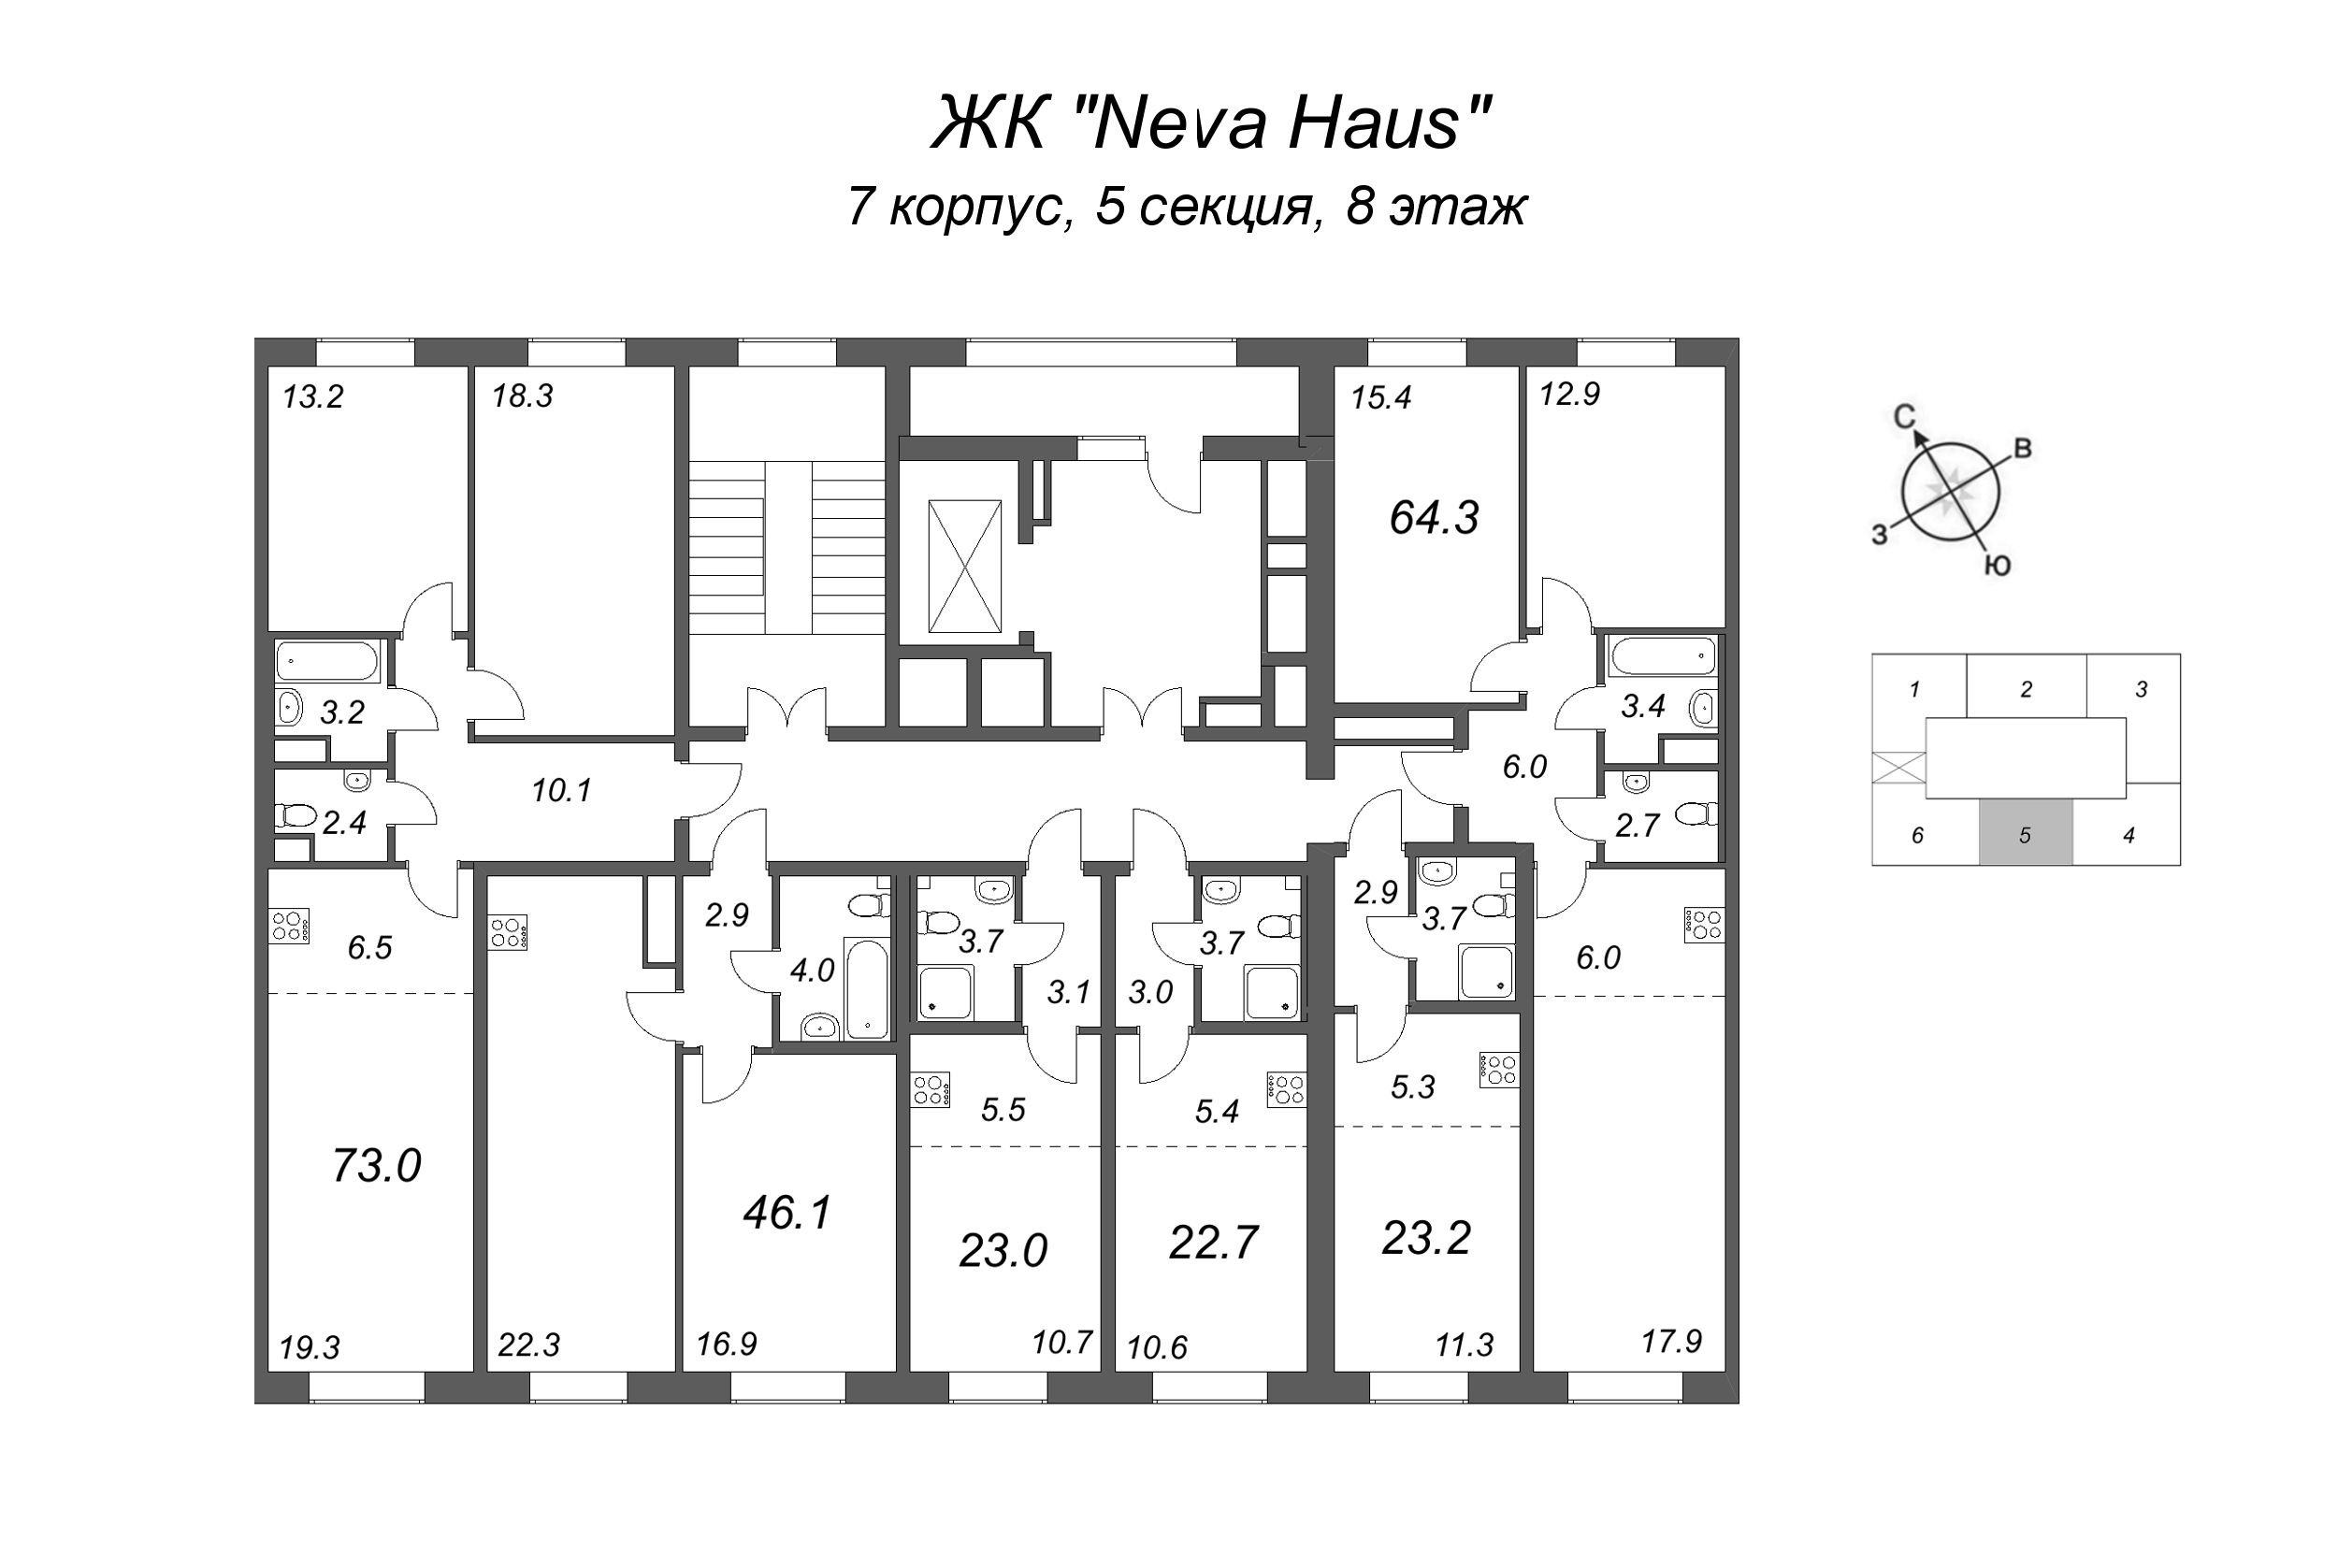 3-комнатная (Евро) квартира, 64.3 м² в ЖК "Neva Haus" - планировка этажа